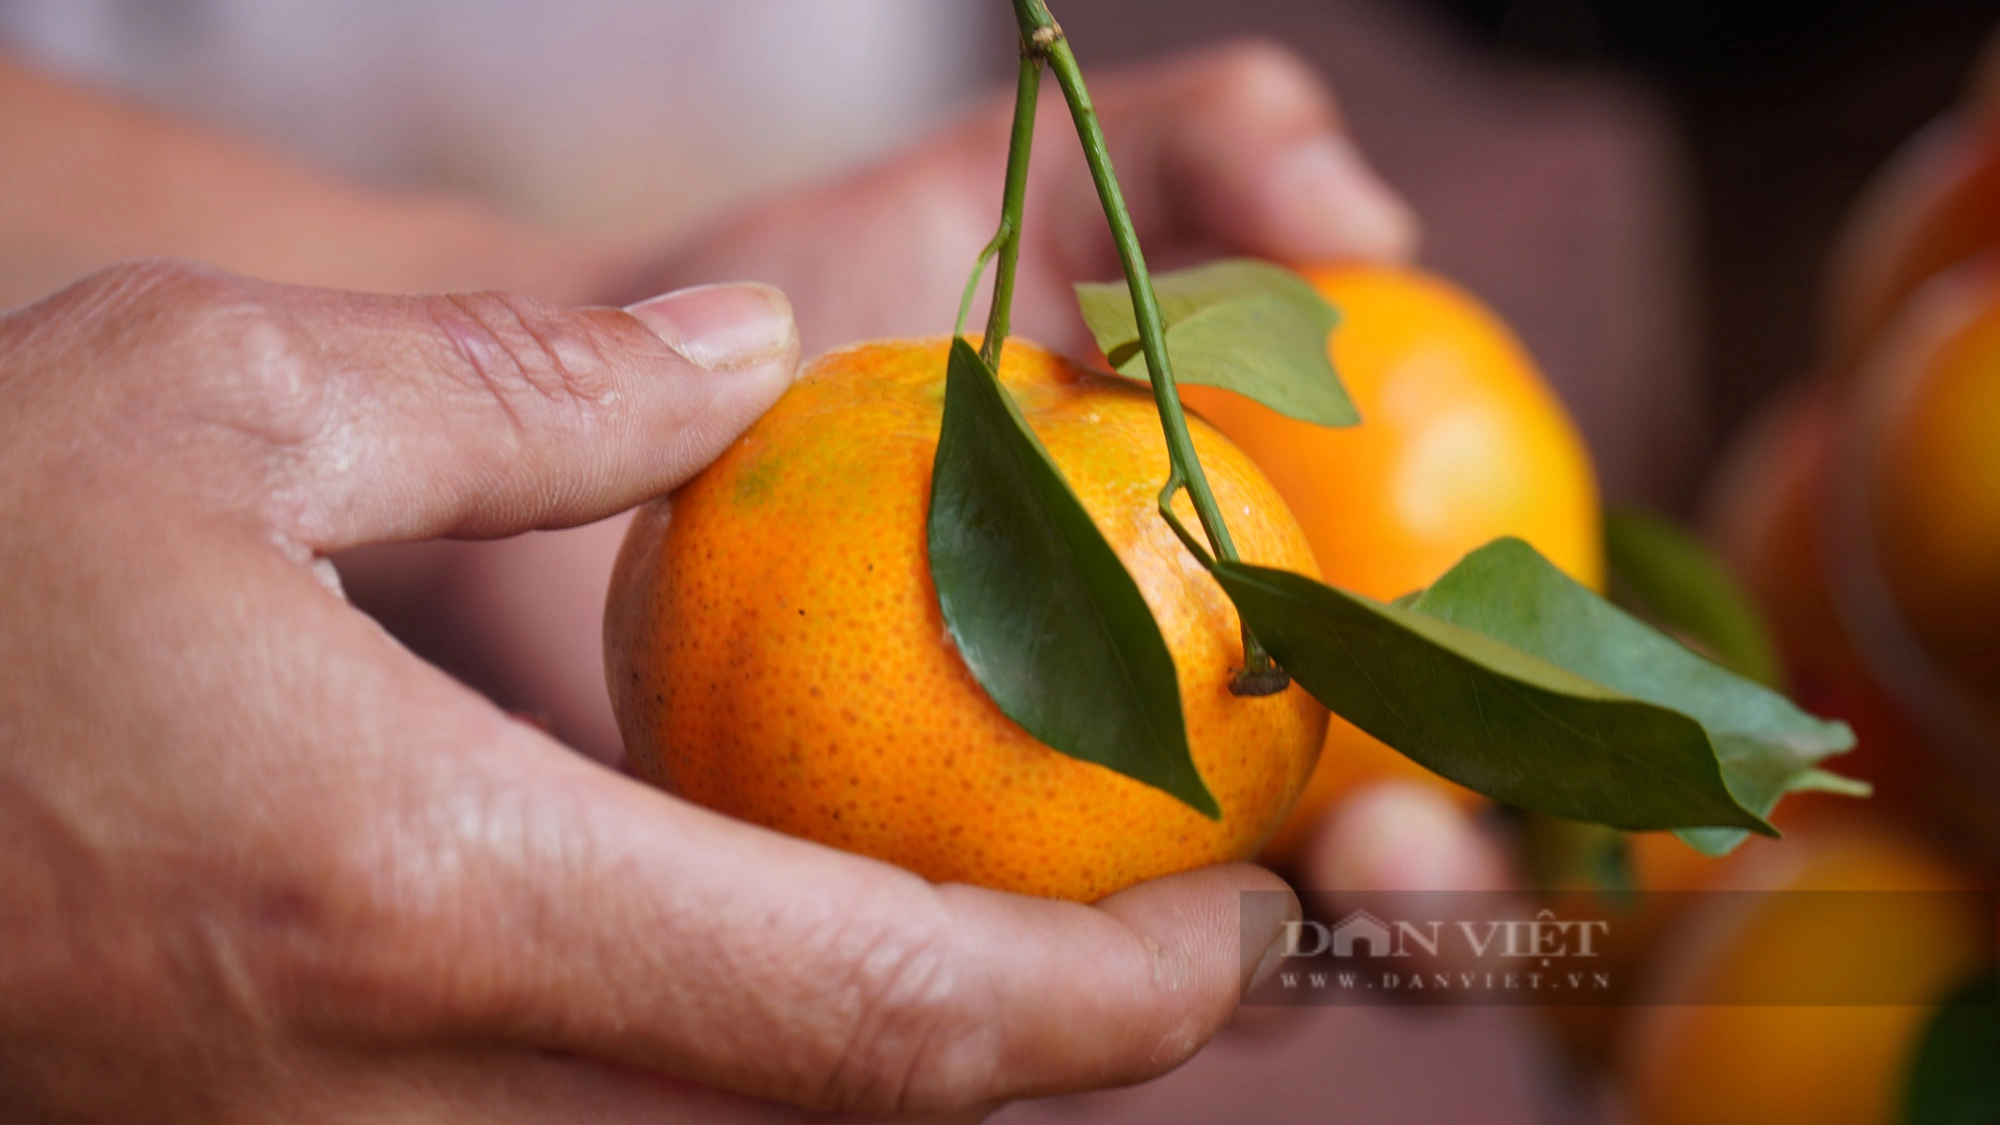 Hội Nông dân tỉnh Bắc Ninh hỗ trợ quảng bá, tiêu thụ cam vàng Hà Giang - Ảnh 2.